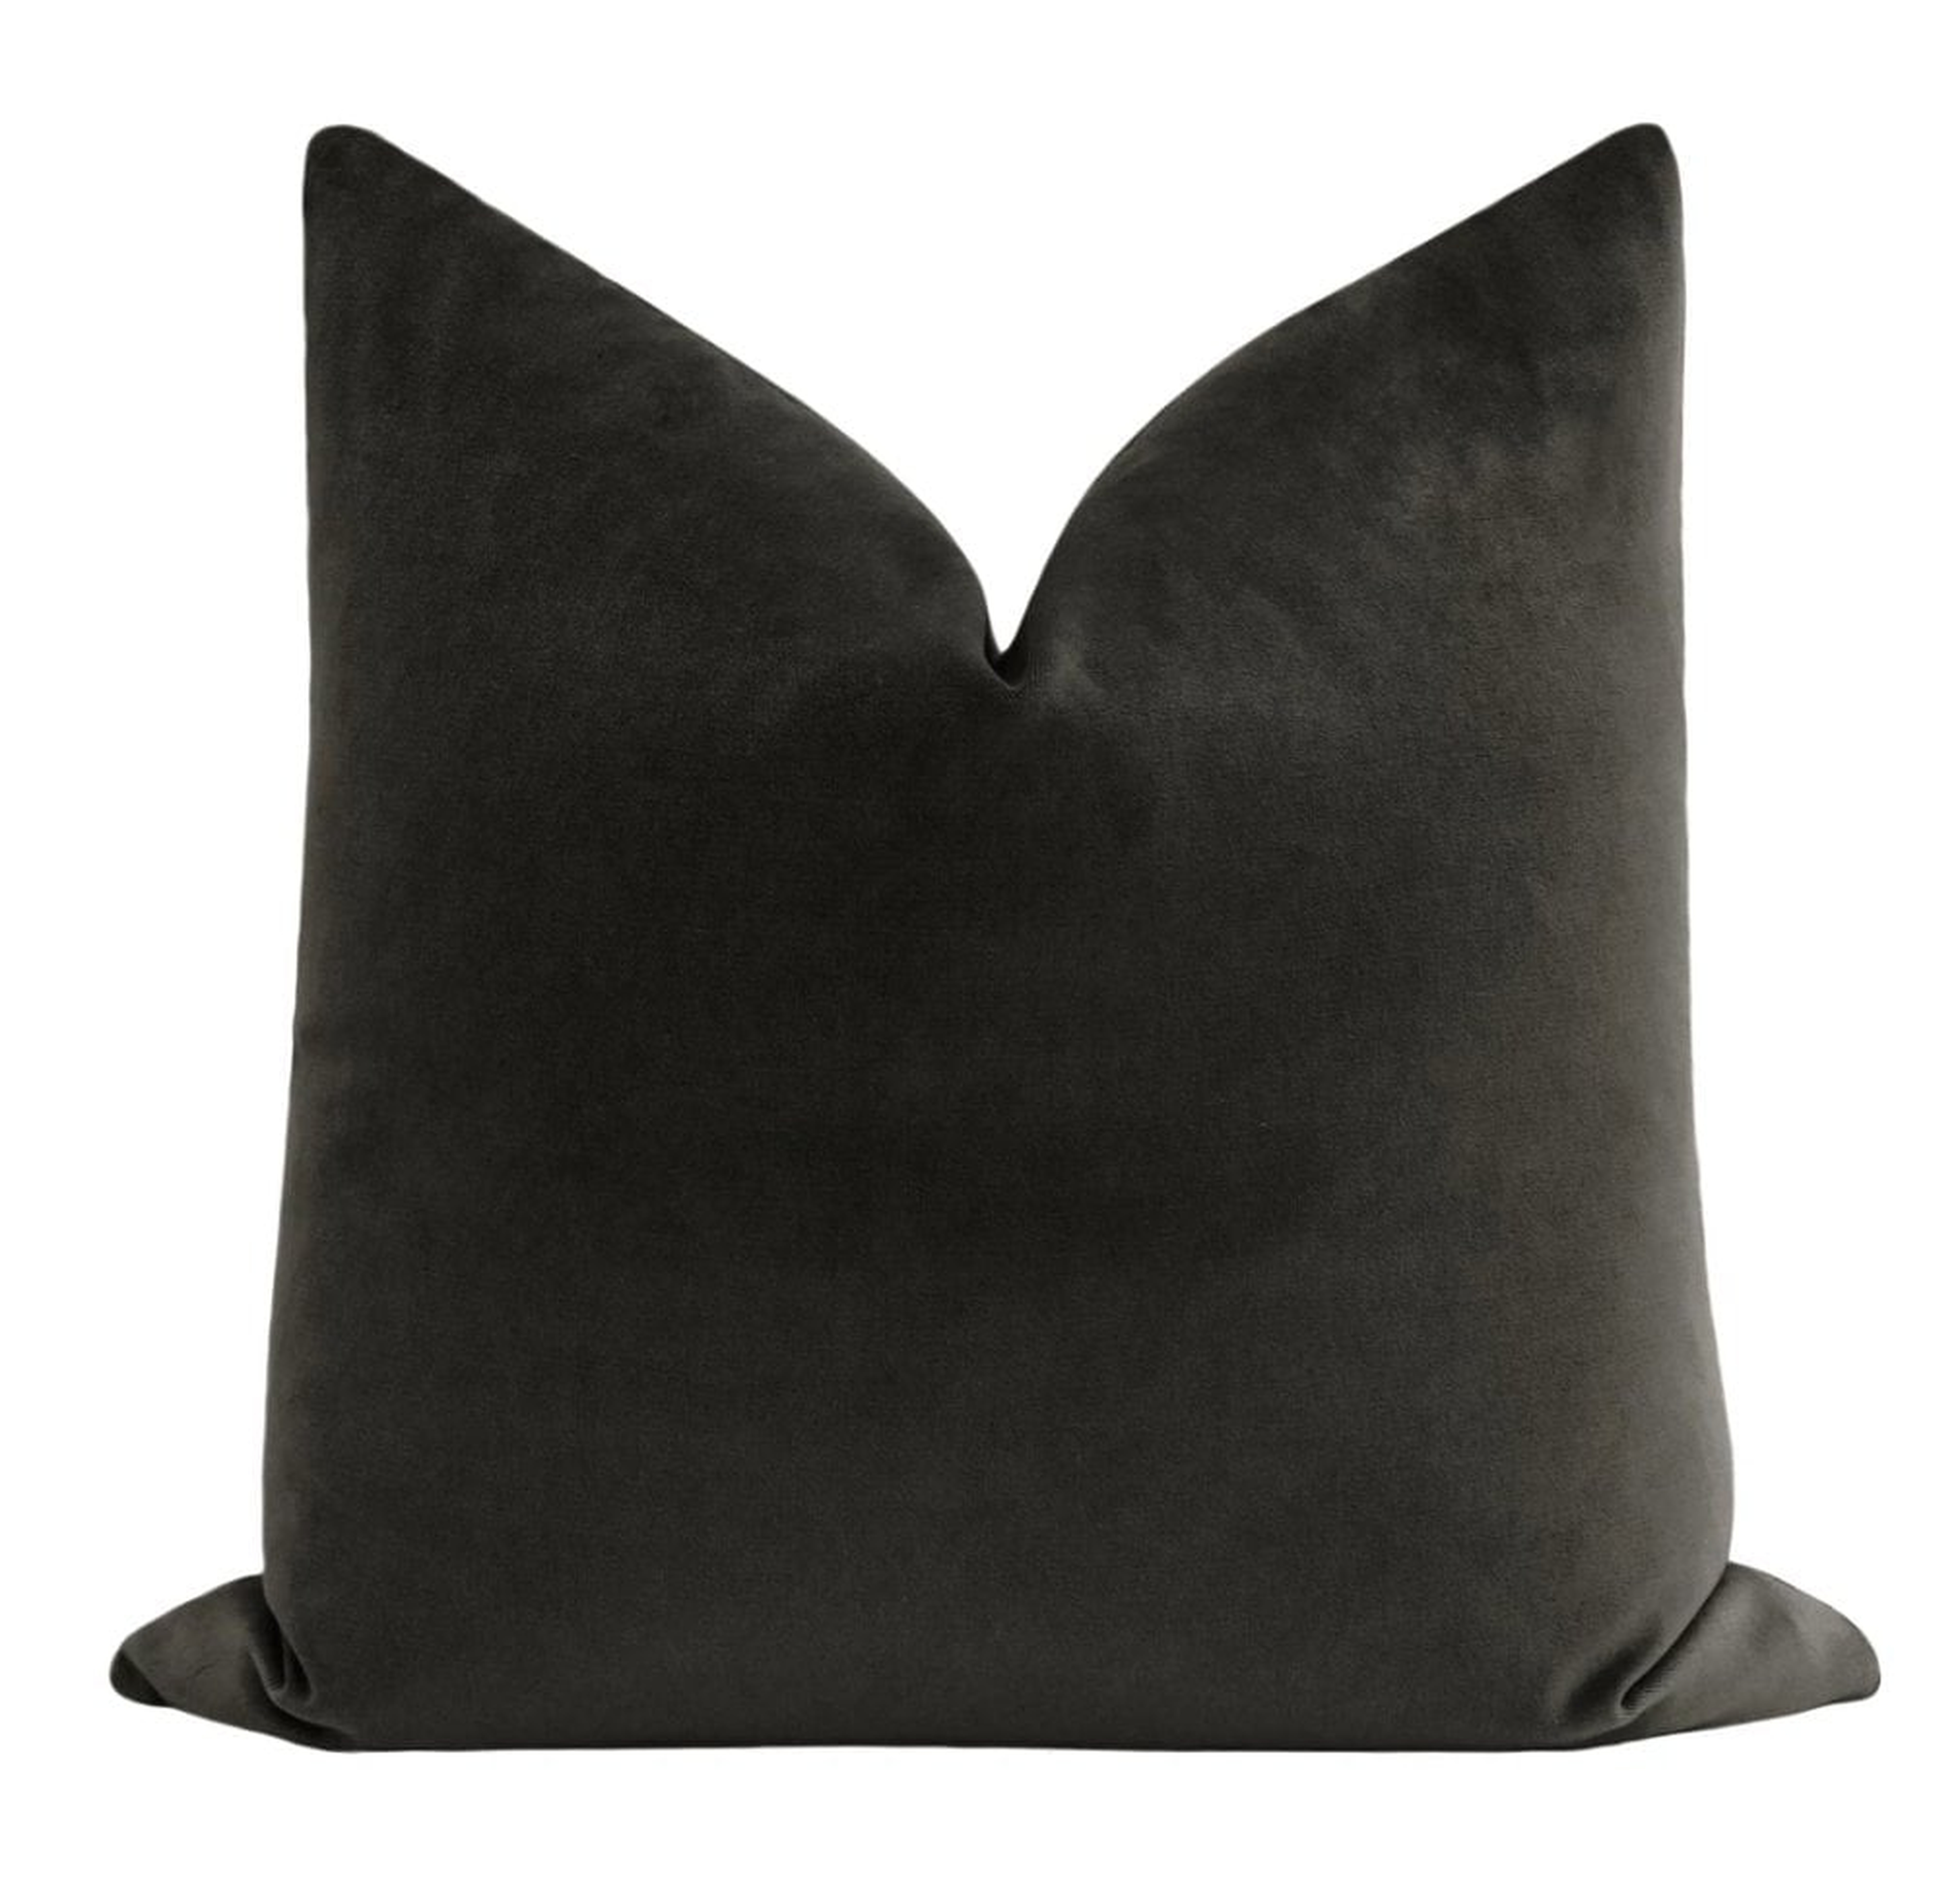 Society Velvet Throw Pillow Cover, Graphite, 20" x 20" - Little Design Company